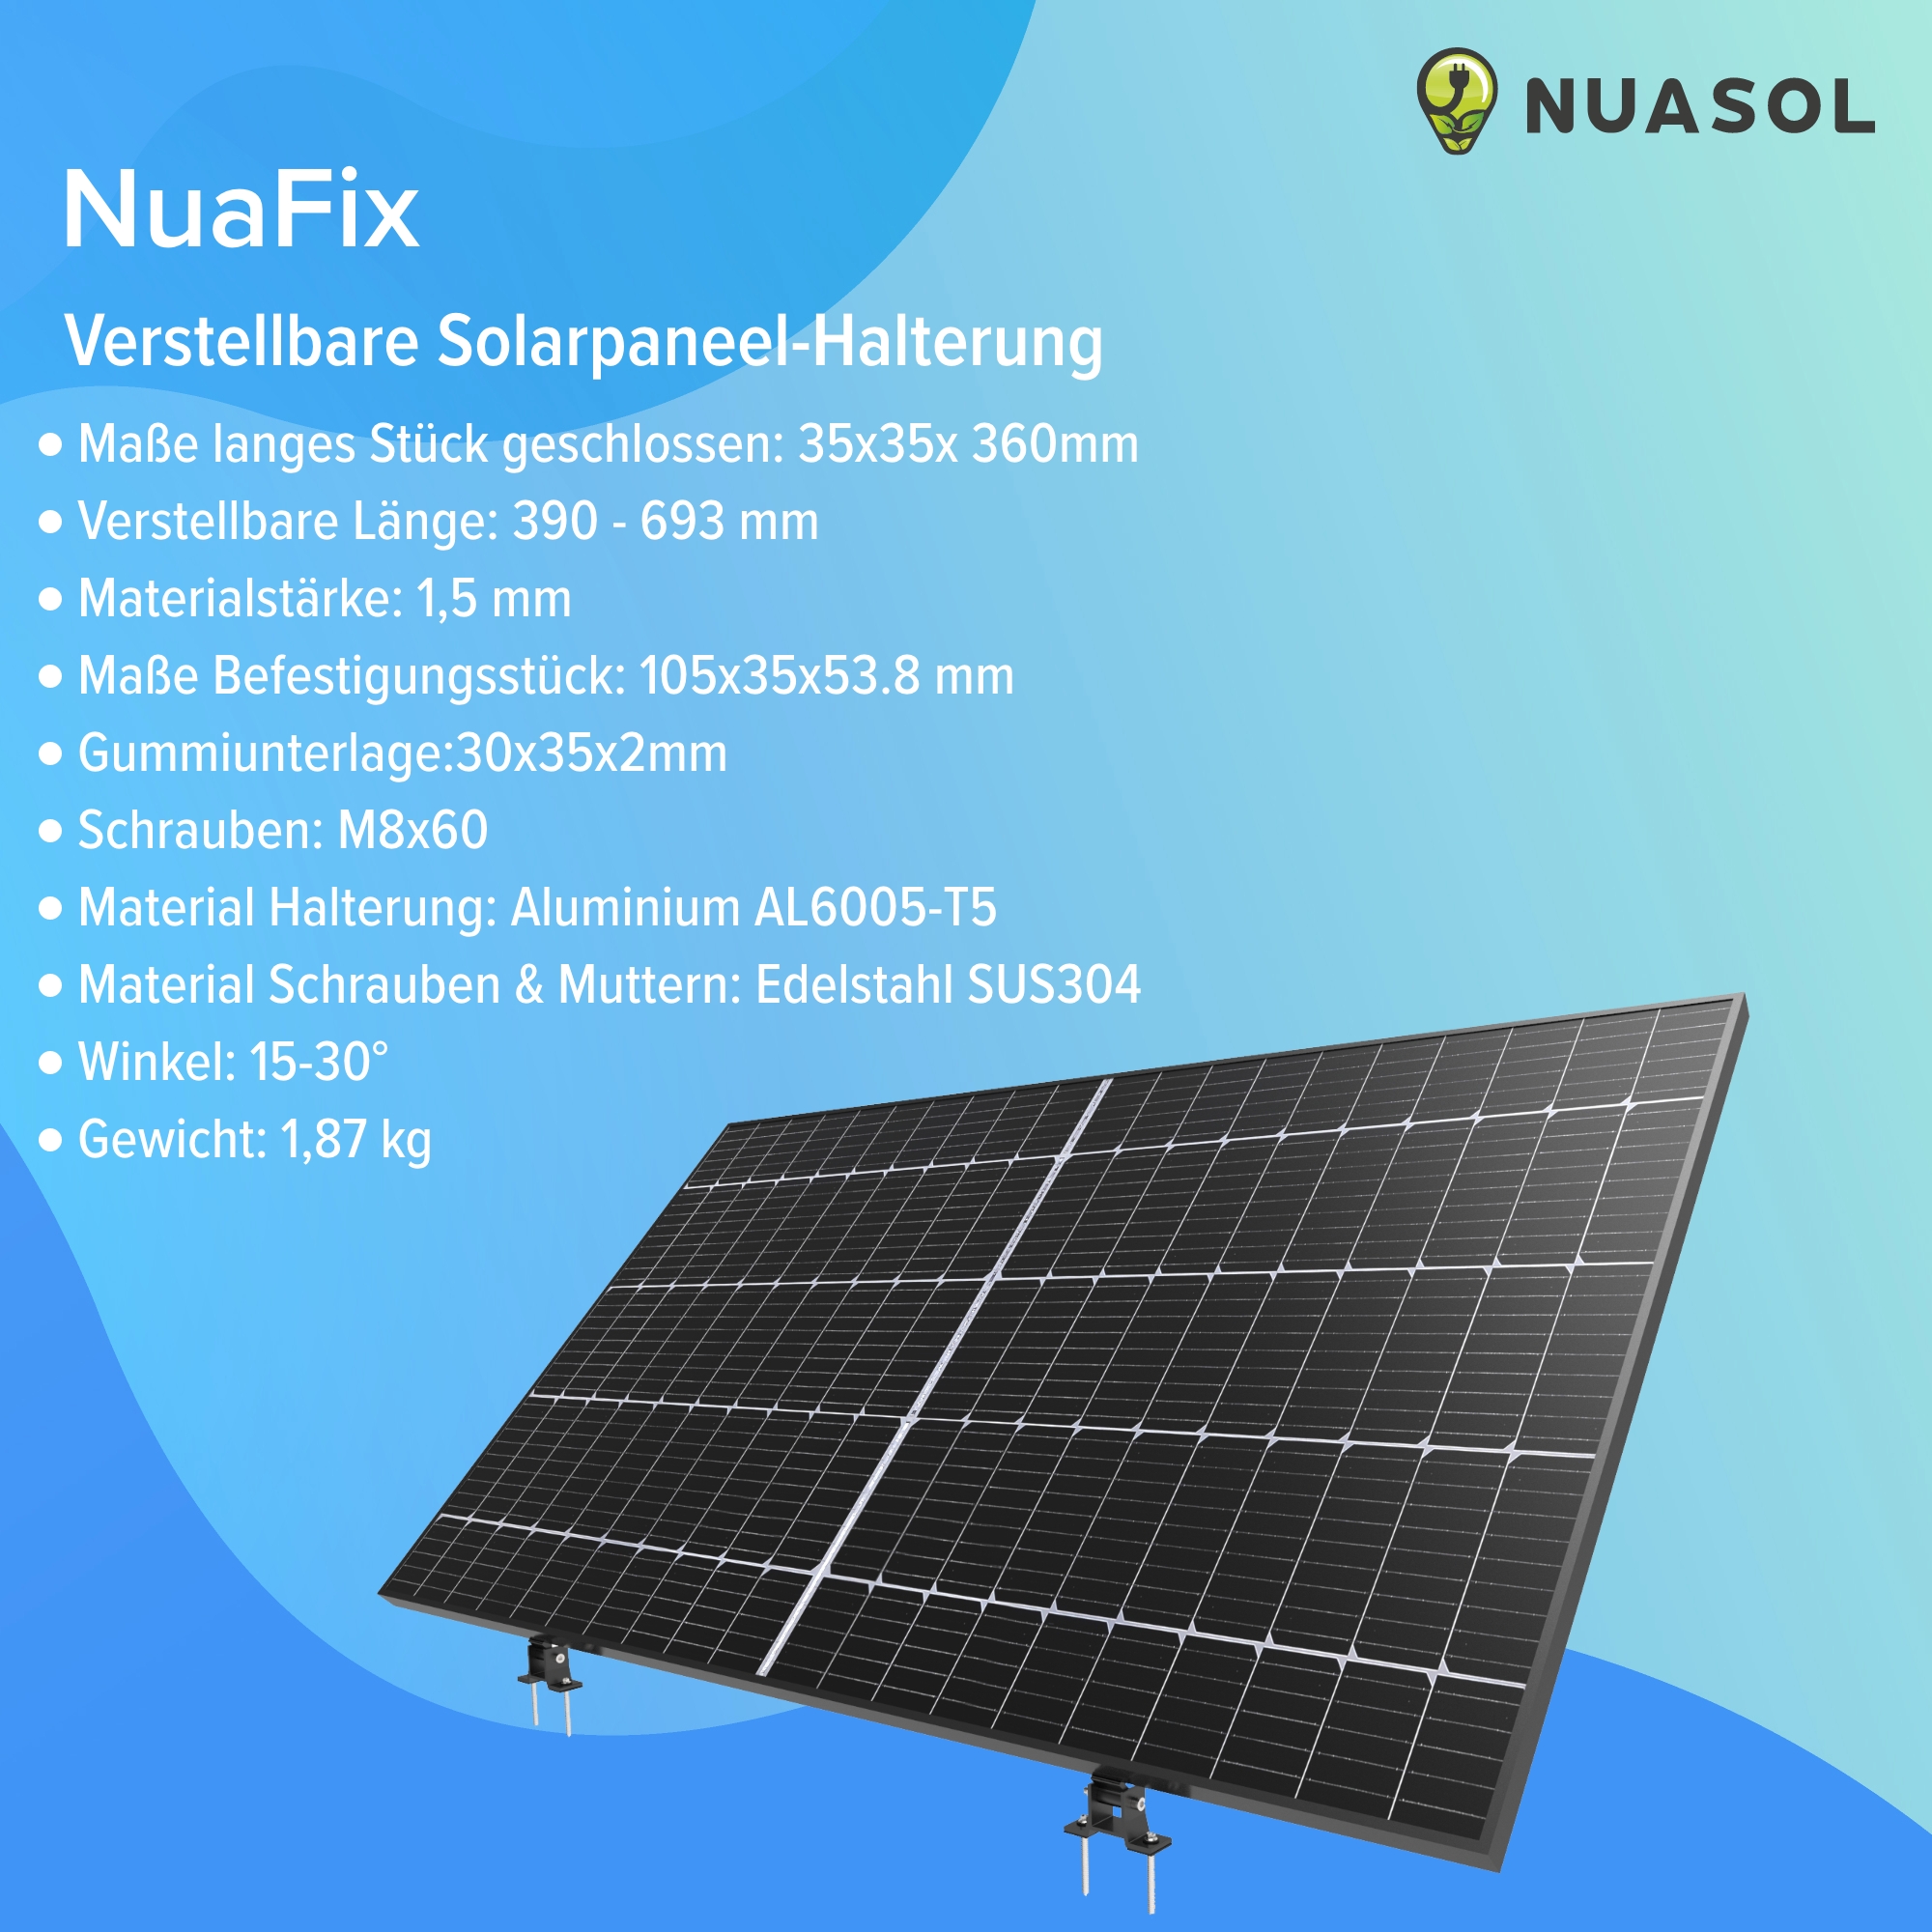 NuaFix – Verstellbare Solarpaneel Halterung 15-30° – Schwarz - NUASOL  Solarenergiesysteme